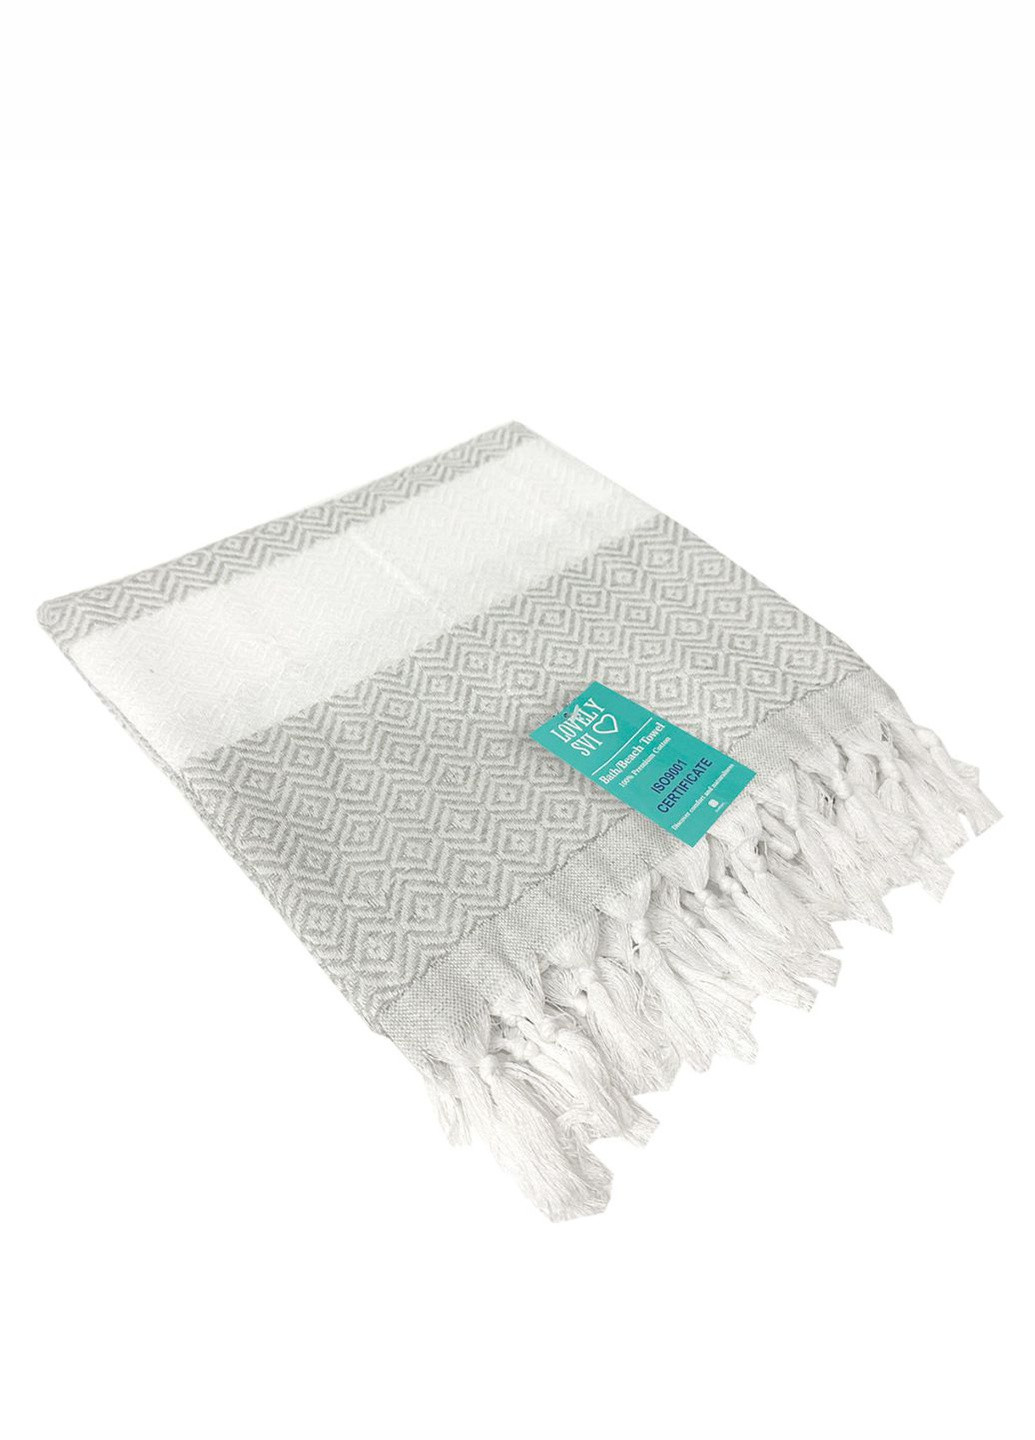 Lovely Svi турецкие пляжные полотенца - пештемаль - xхl (100 на 180 см) - хлопок - серый геометрический серый производство - Китай